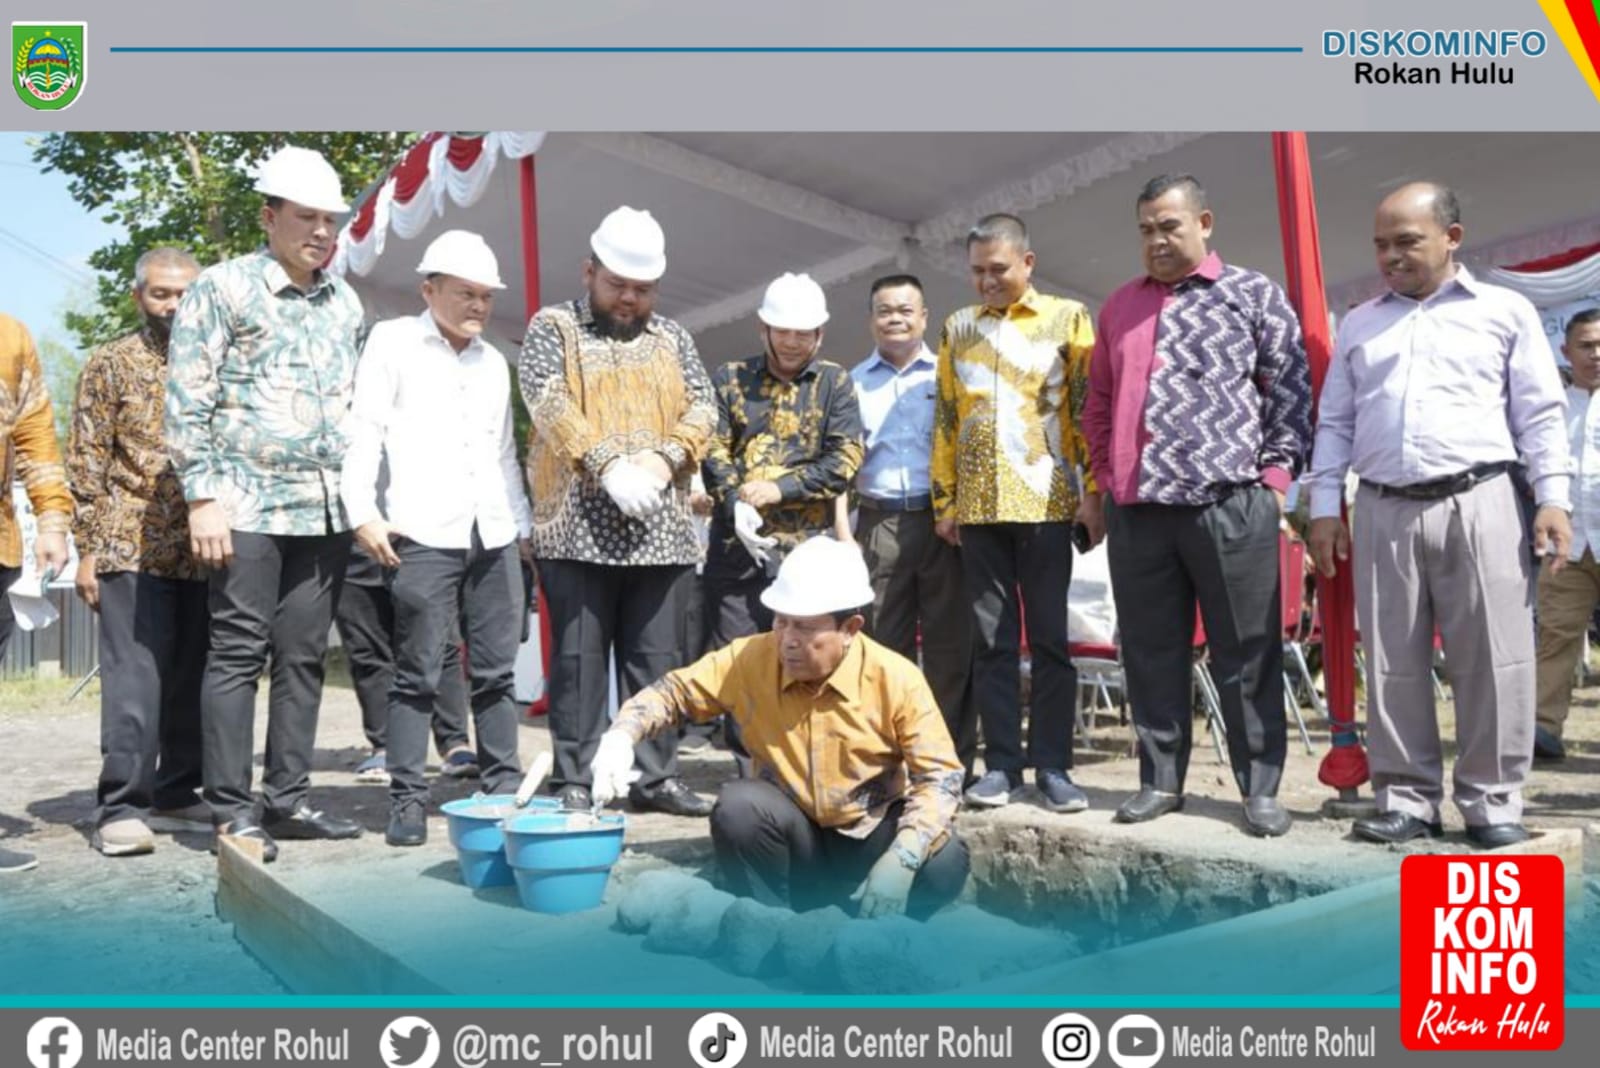 Bupati H. Sukiman Lakukan Peletakan Batu Pertama Pembangunan Asrama Mahasiswa Rohul di Yogyakarta